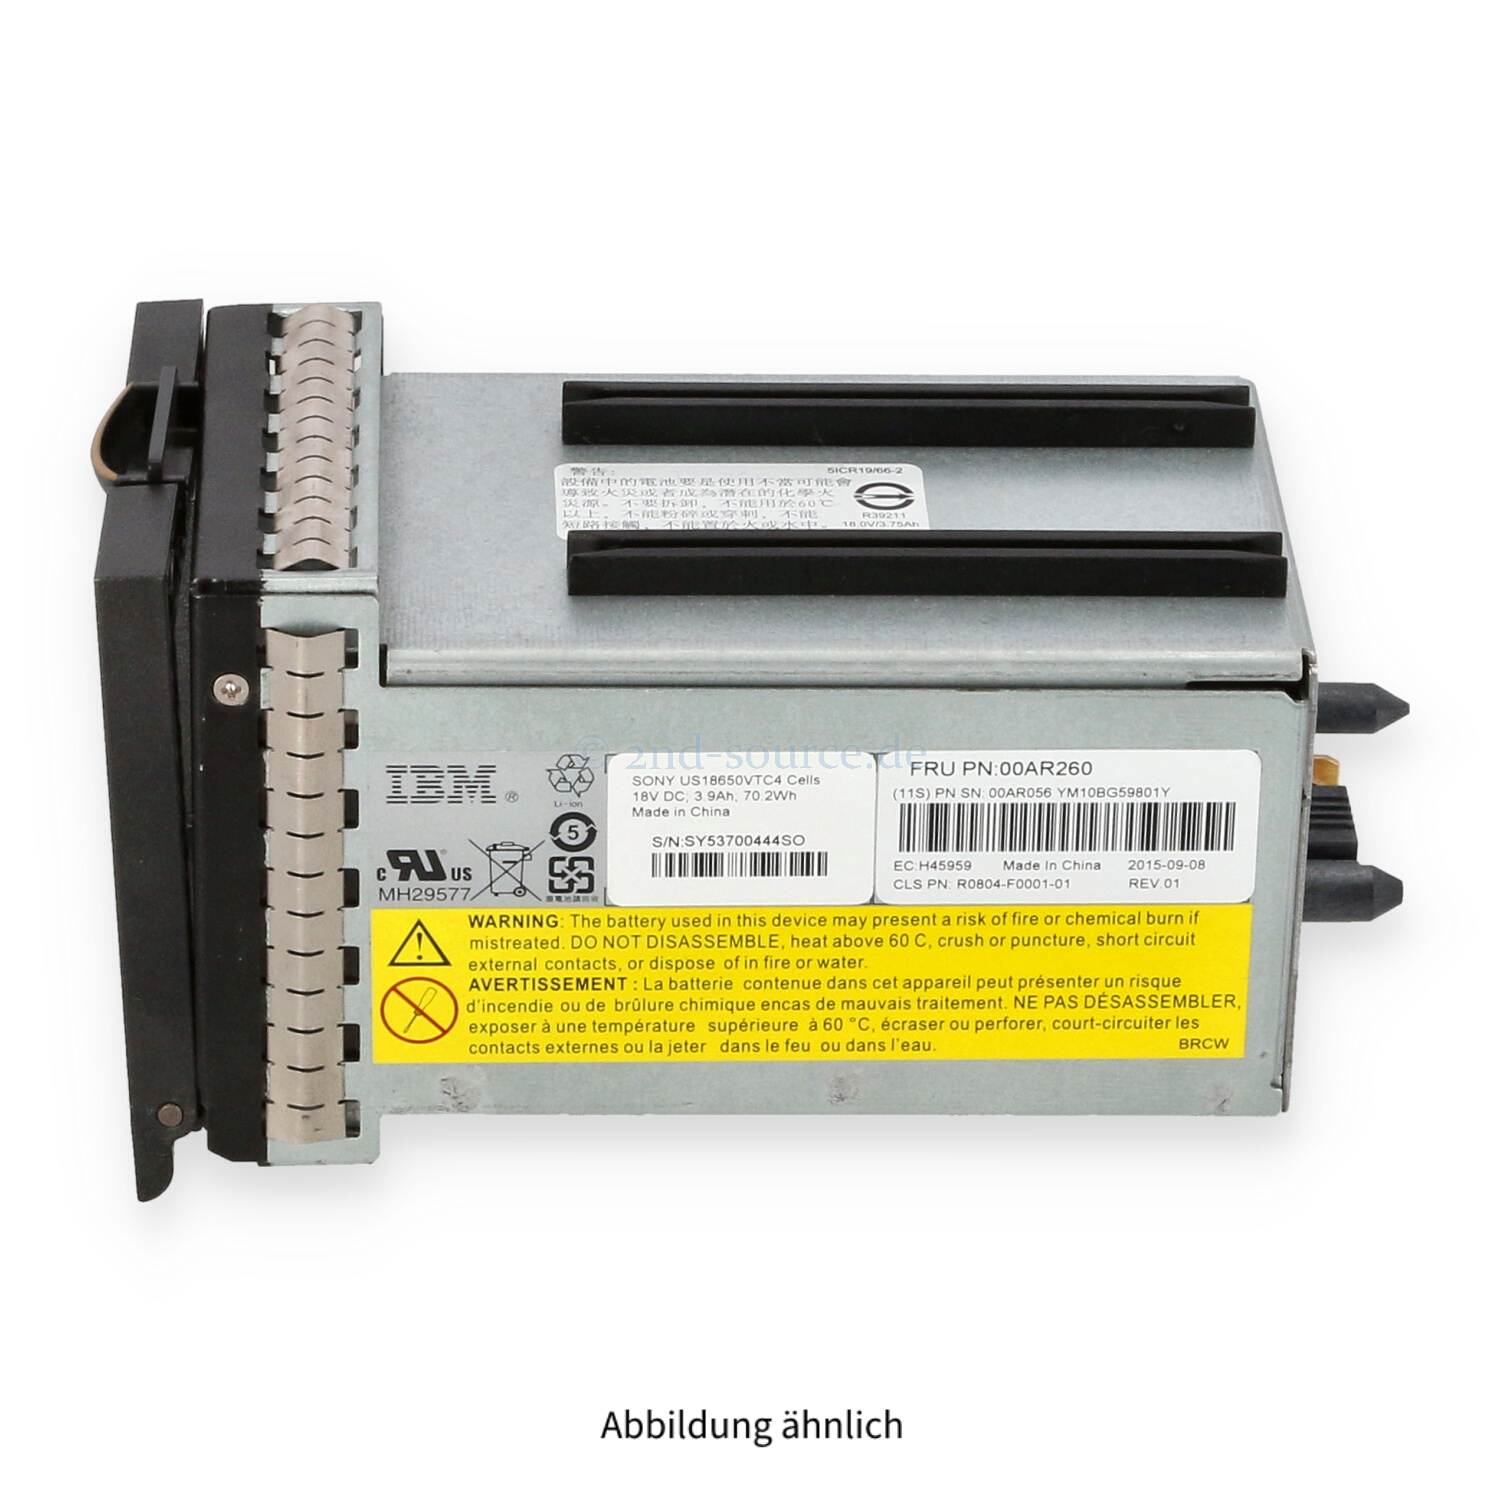 IBM SVC RAID Cache Battery Backup Module 00AR260 00AR056